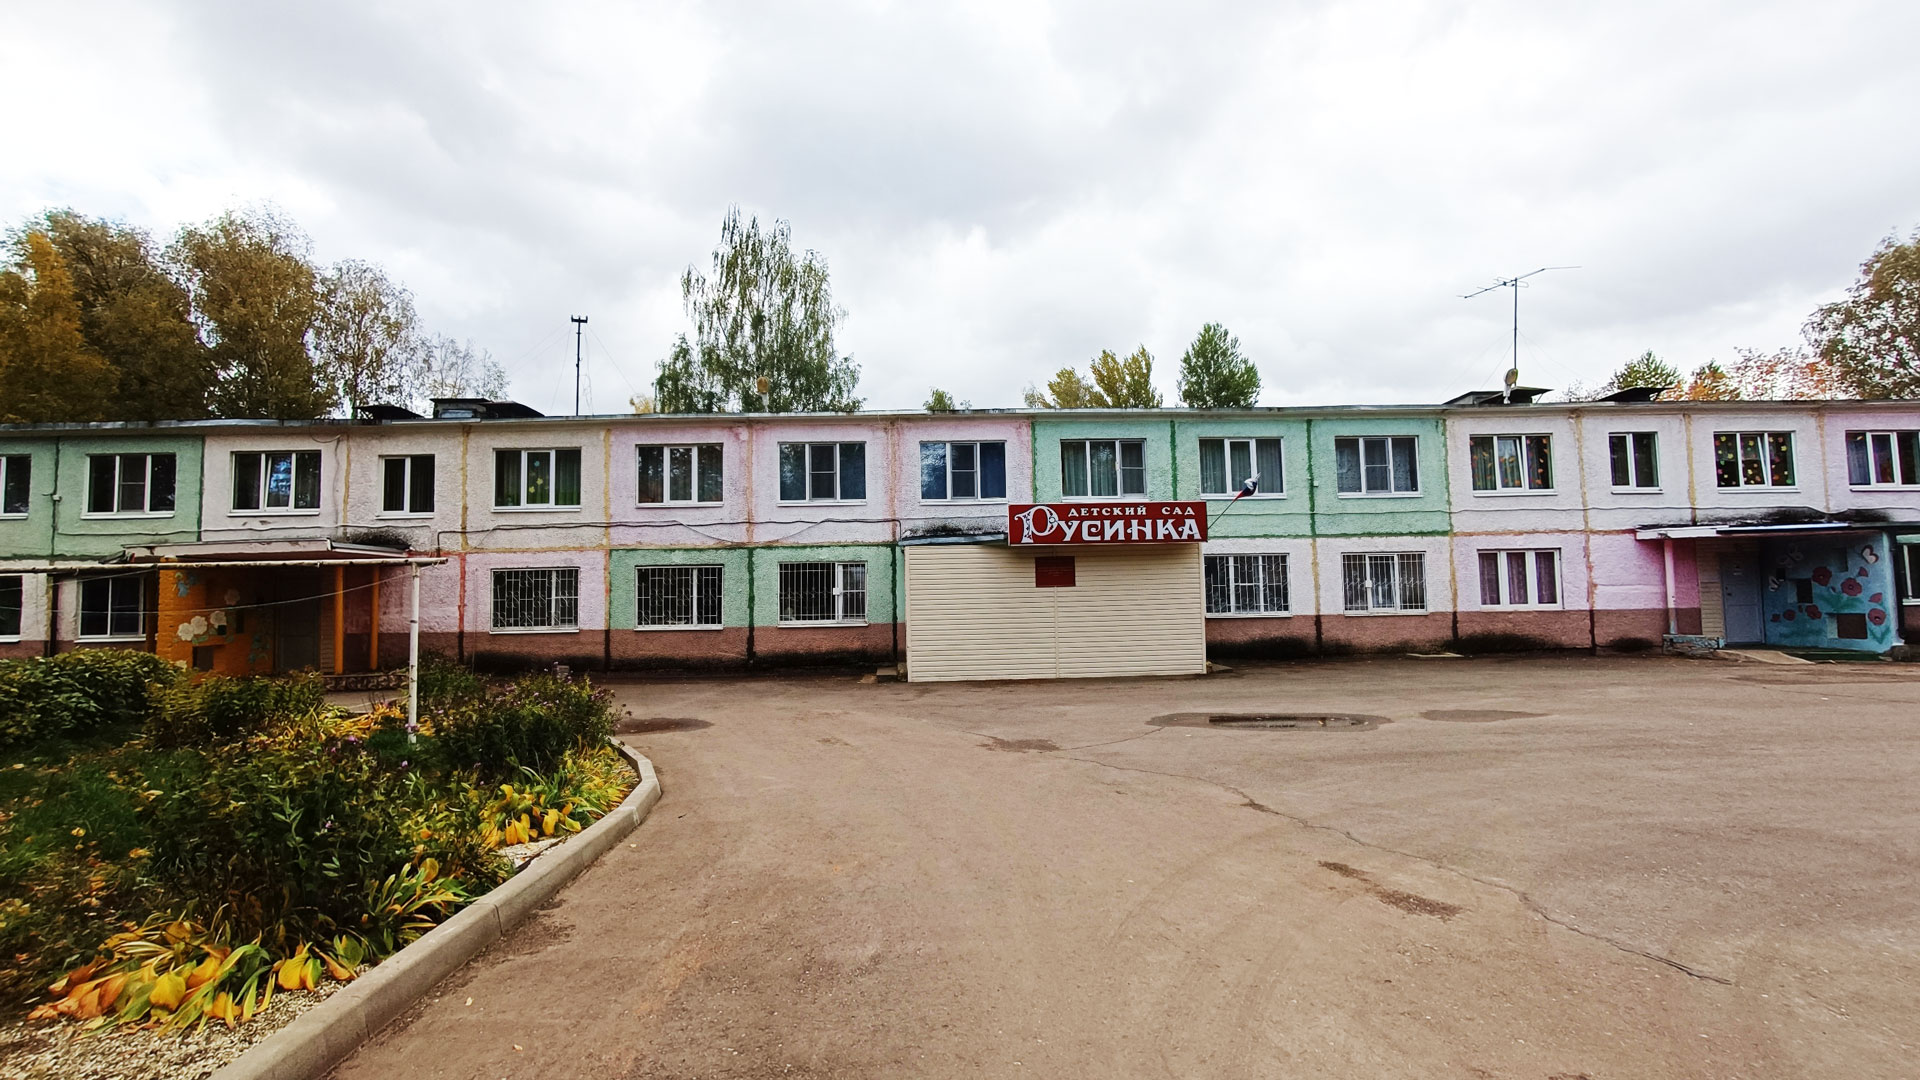 Детский сад 128 Ярославль: общий вид здания.